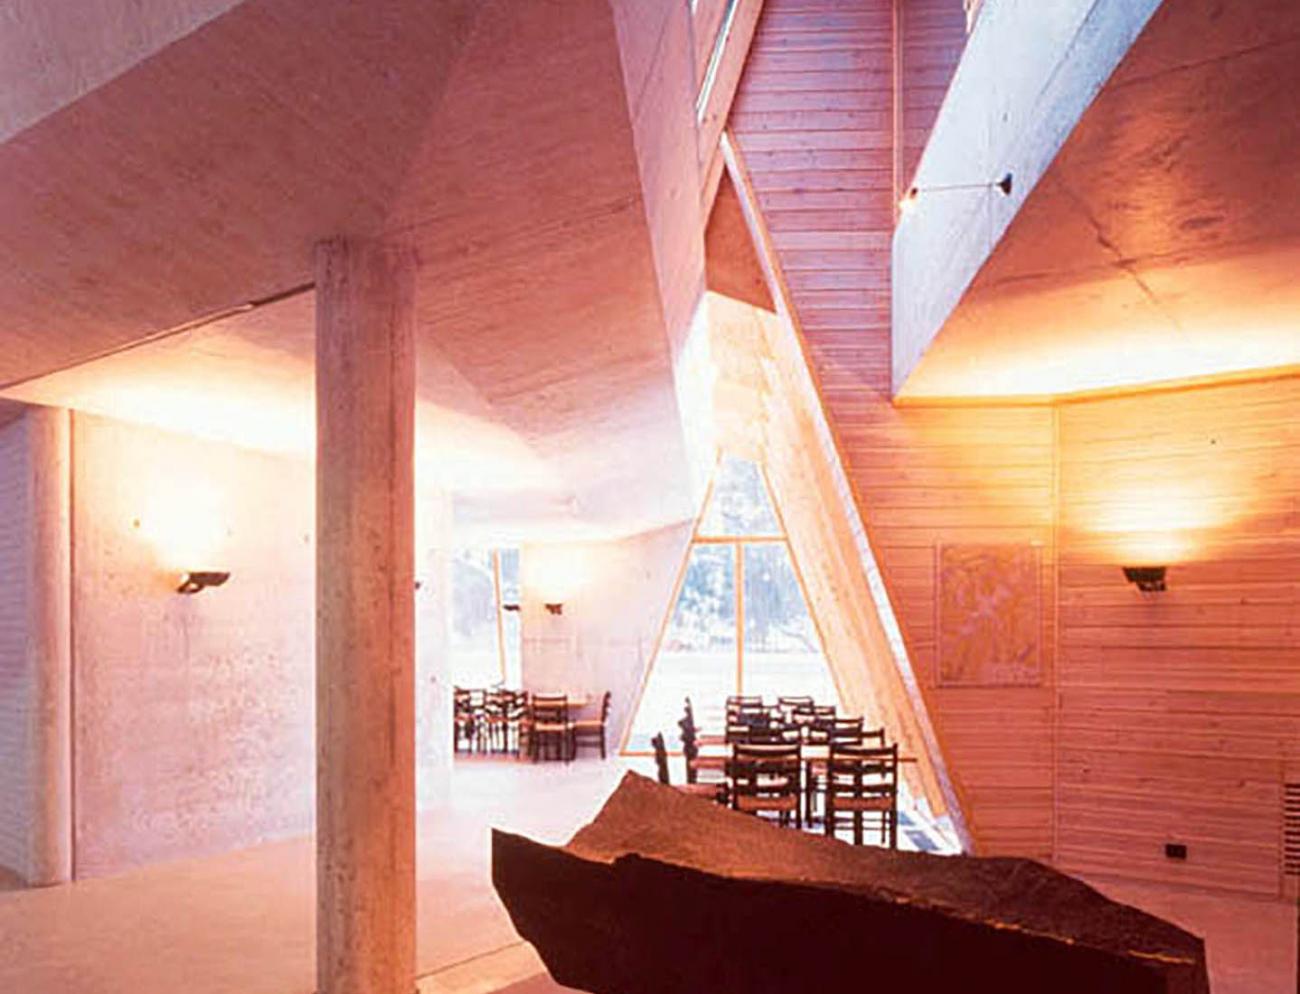 Sverre Fehn | The Pritzker Architecture Prize